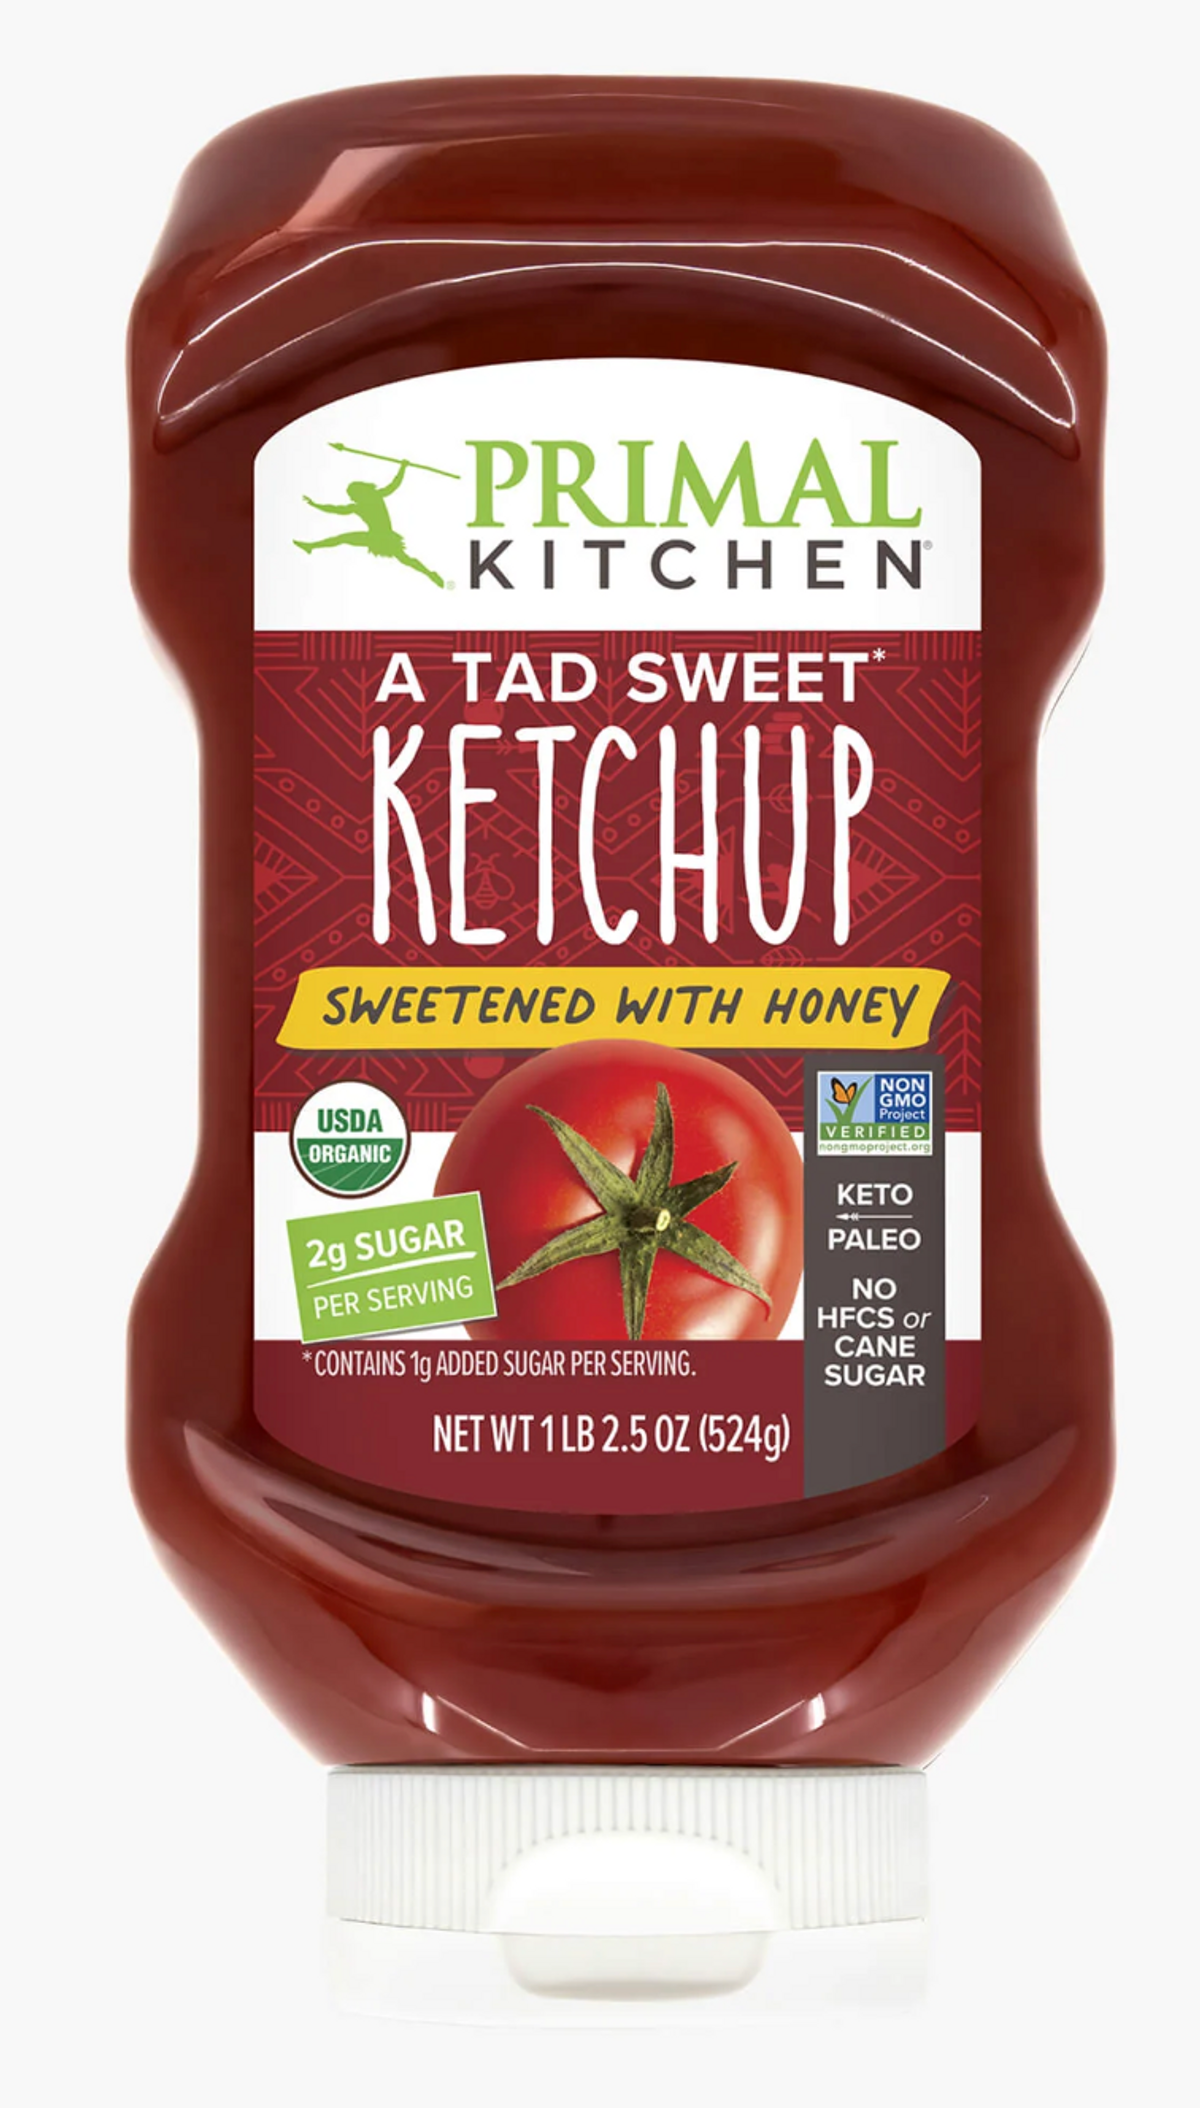 Primal Kitchen Ketchup and Mustard Reviews